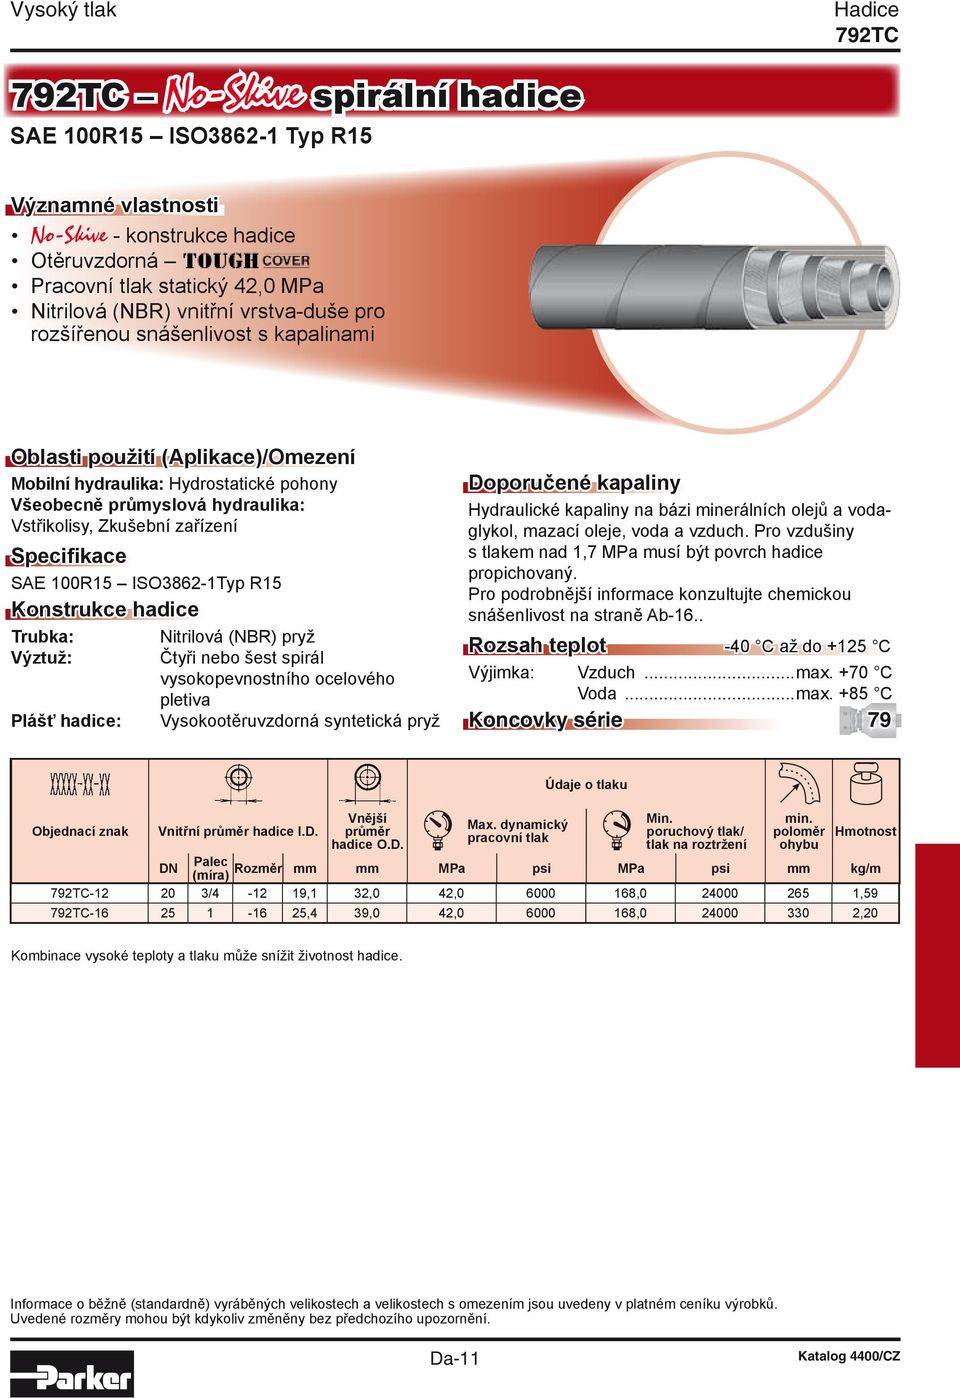 Specifikace SAE 100R15 ISO3862-1Typ R15 Konstrukce hadice Trubka: Výztuž: Plášť hadice: Nitrilová (NBR) pryž Čtyři nebo šest spirál vysokopevnostního ocelového pletiva Vysokootěruvzdorná syntetická